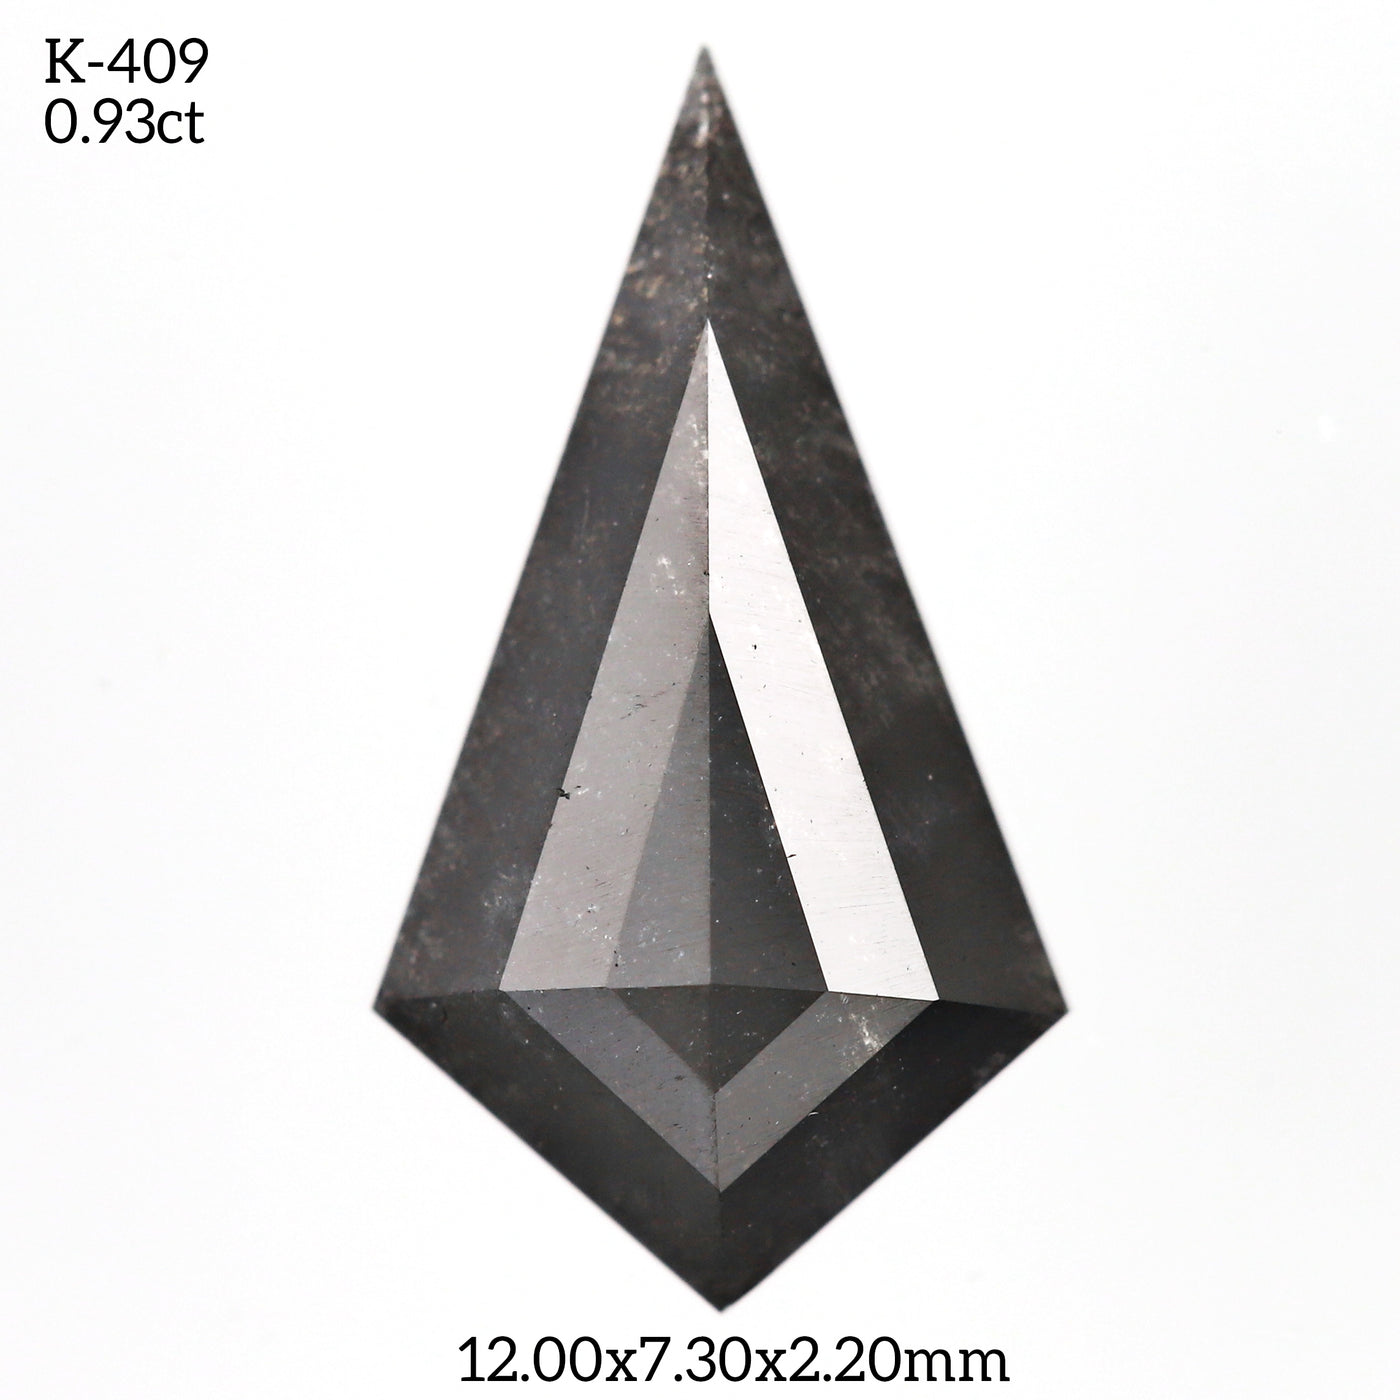 K409 - Salt and pepper kite diamond